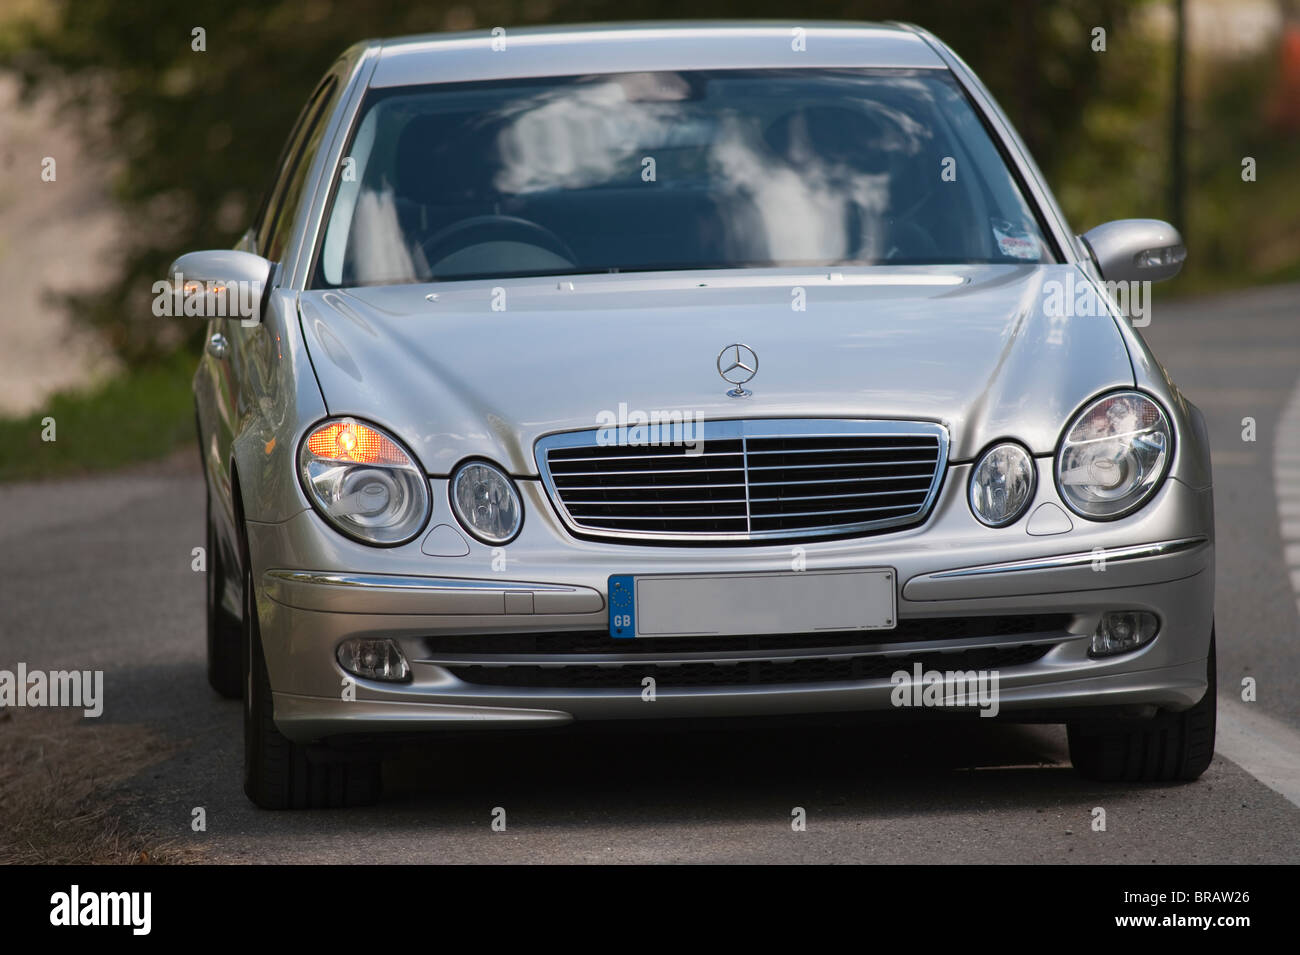 E Class Mercedes Benz car Stock Photo